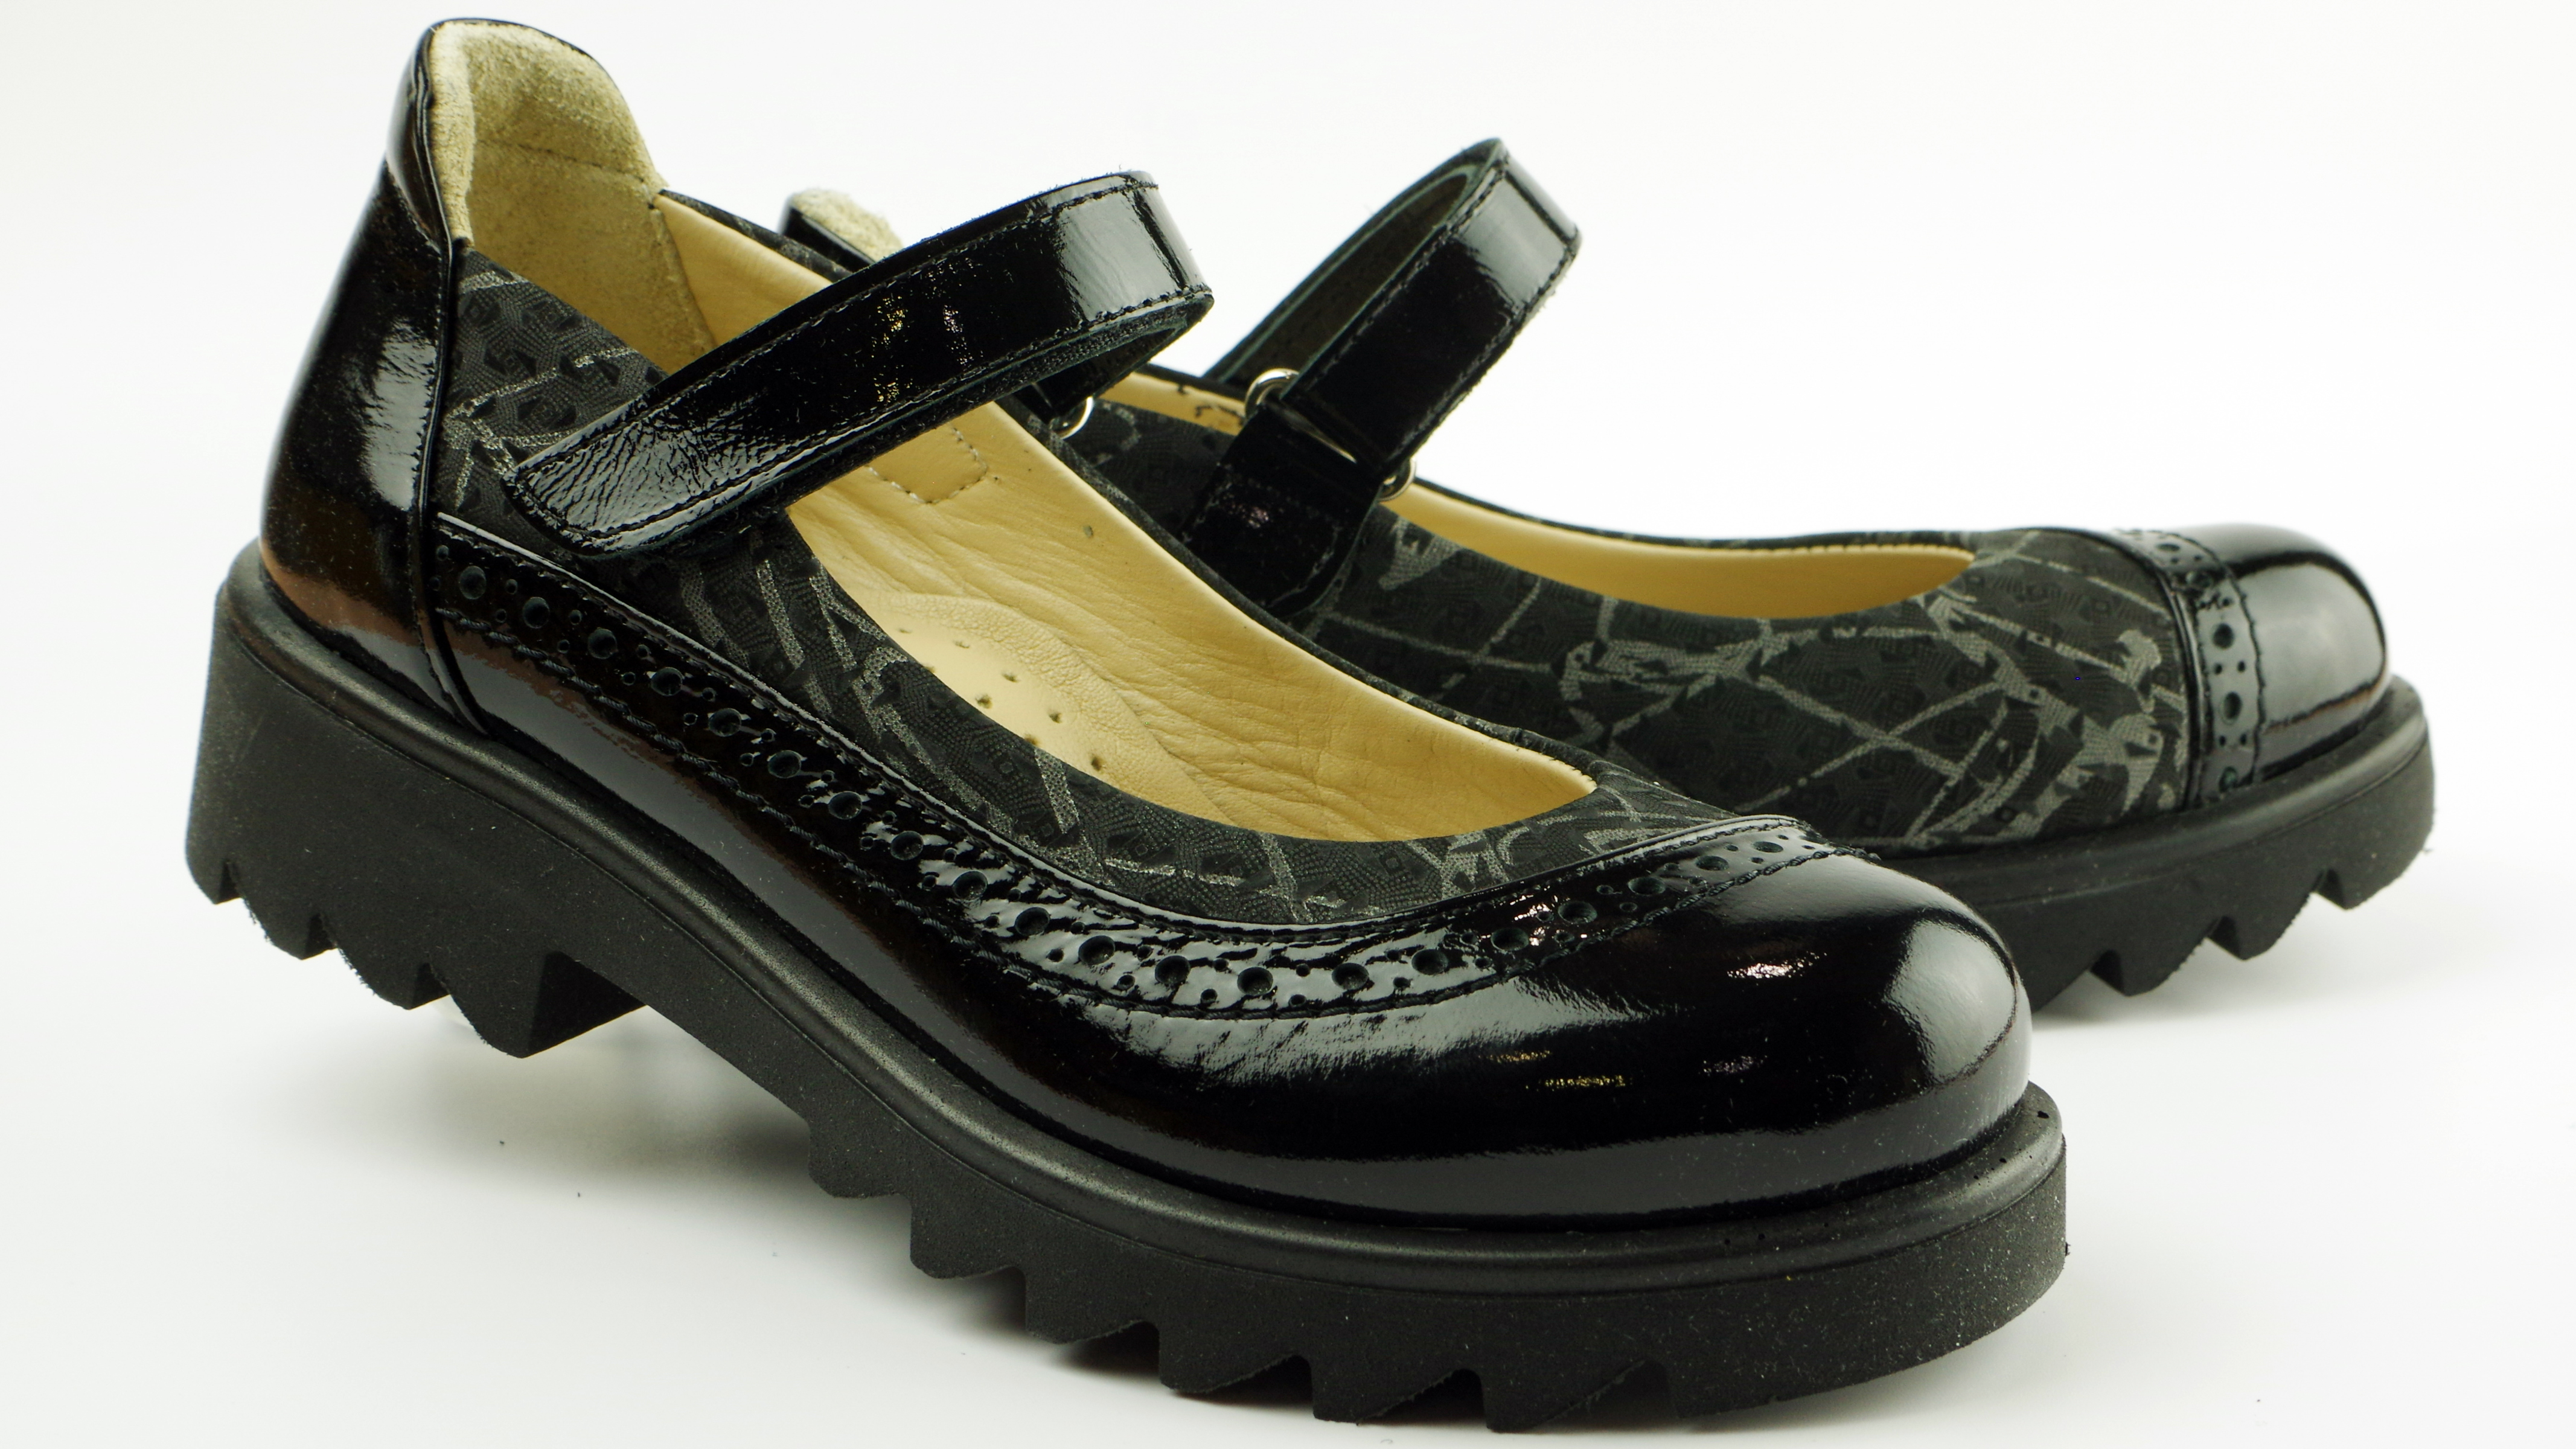 Туфлі дитячі (2116) для дівчинки, матеріал Натуральна шкіра, Чорний колір, 31-36 розміри – Sole Kids. Фото 2